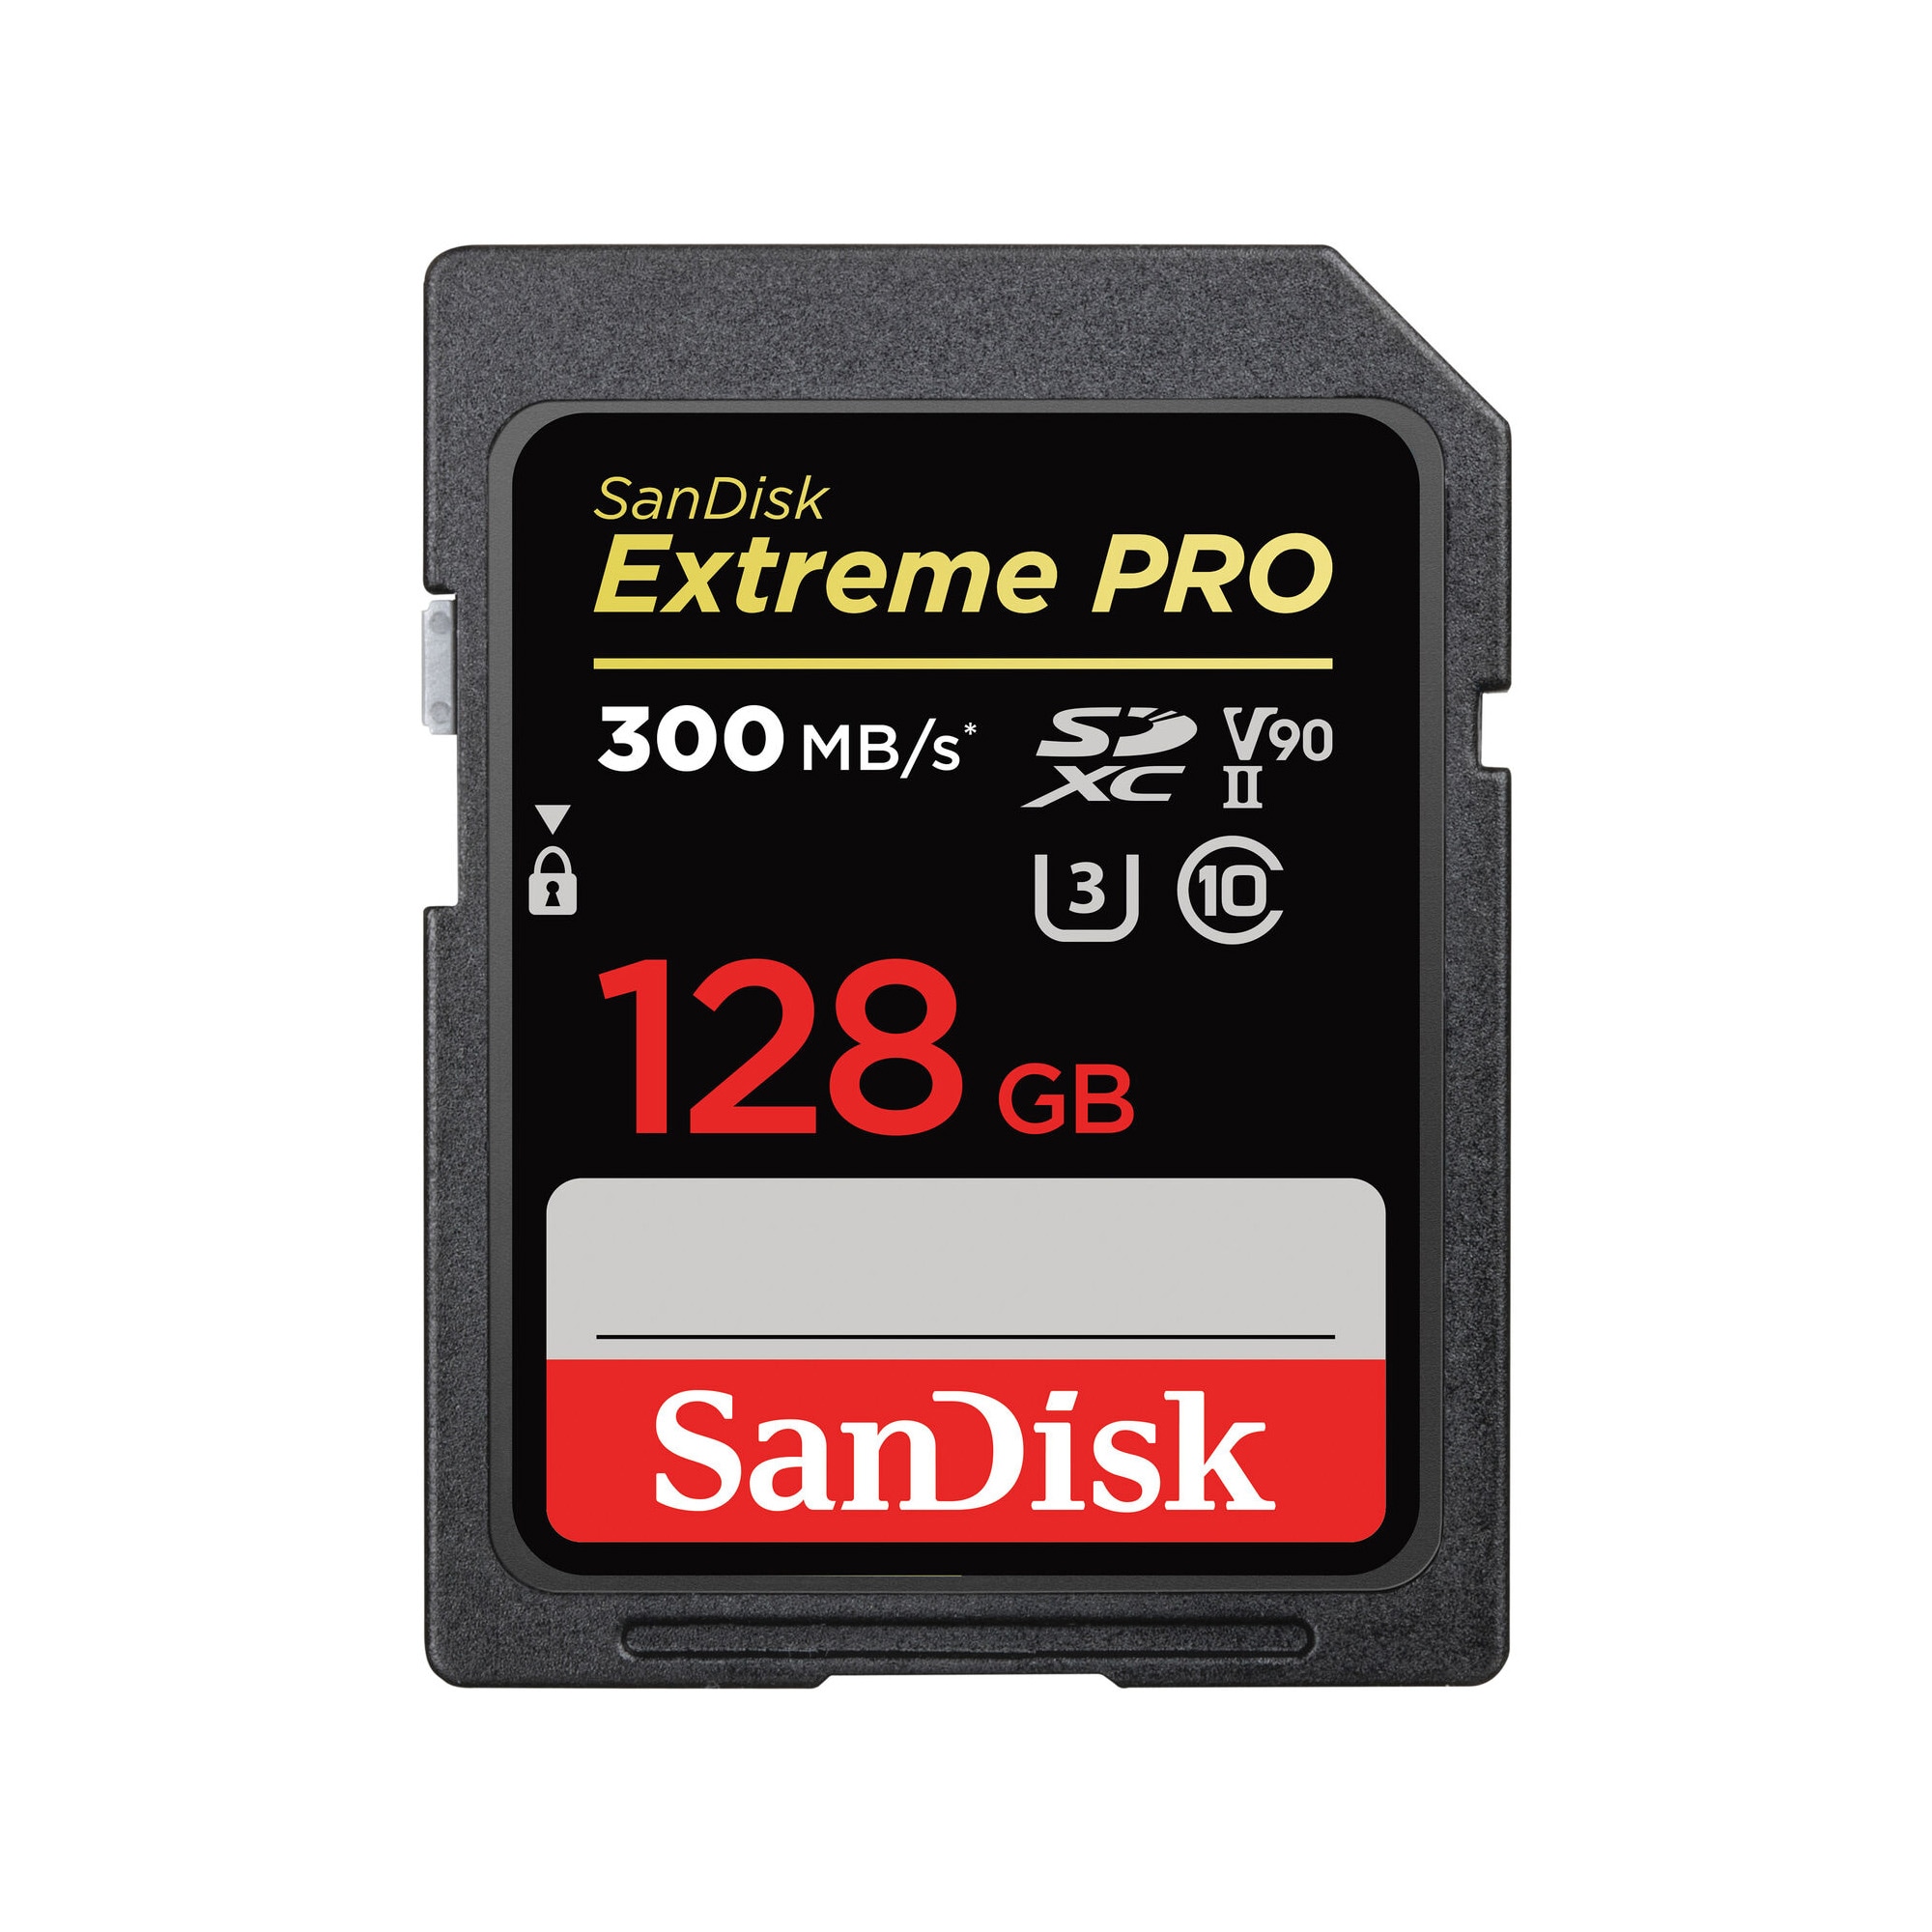 SanDisk Extreme Pro 300MB/s UHS-II V90 128GB